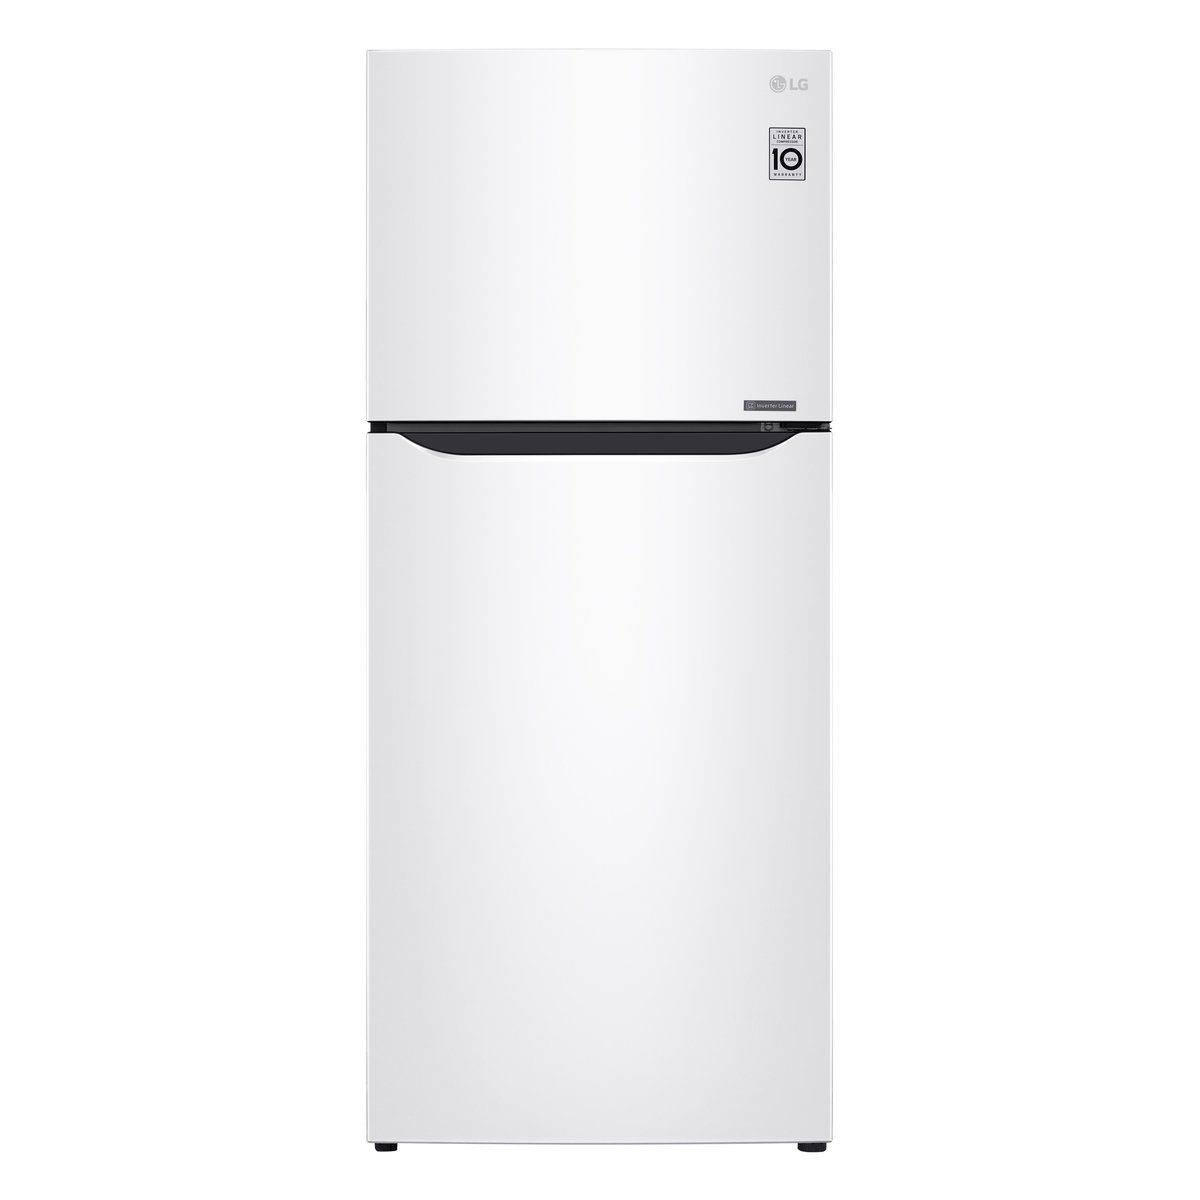 LG Double Door Refrigerator GN-C492SQCN 490Ltr